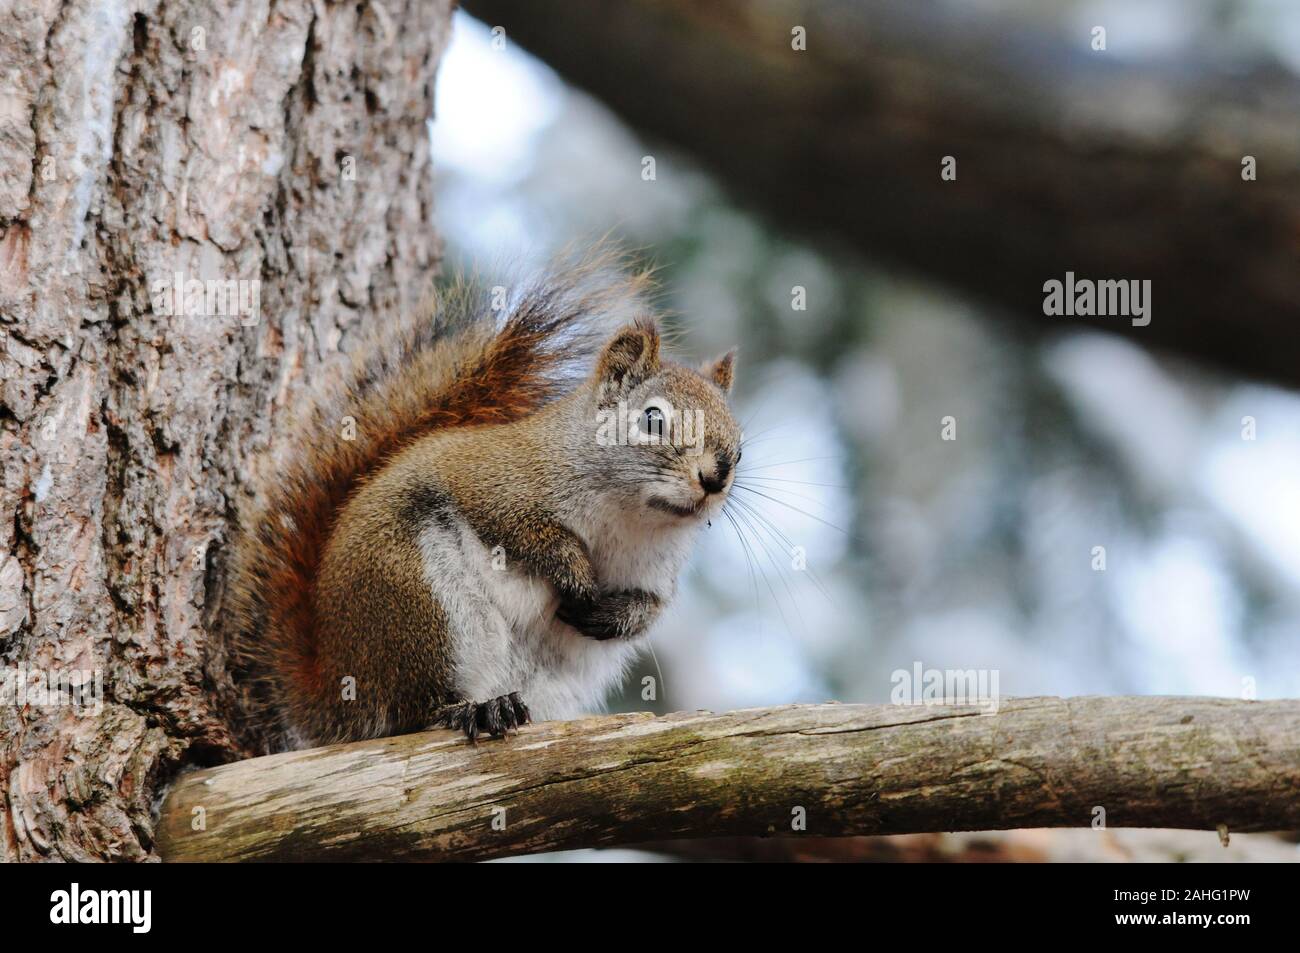 Eichhörnchen Tier close-up Profil anzeigen im Wald sitzt auf einem Ast Baum mit bokeh Hintergrund anzeigen sein braunes Fell, Kopf, Augen, Nase, Ohren, p Stockfoto